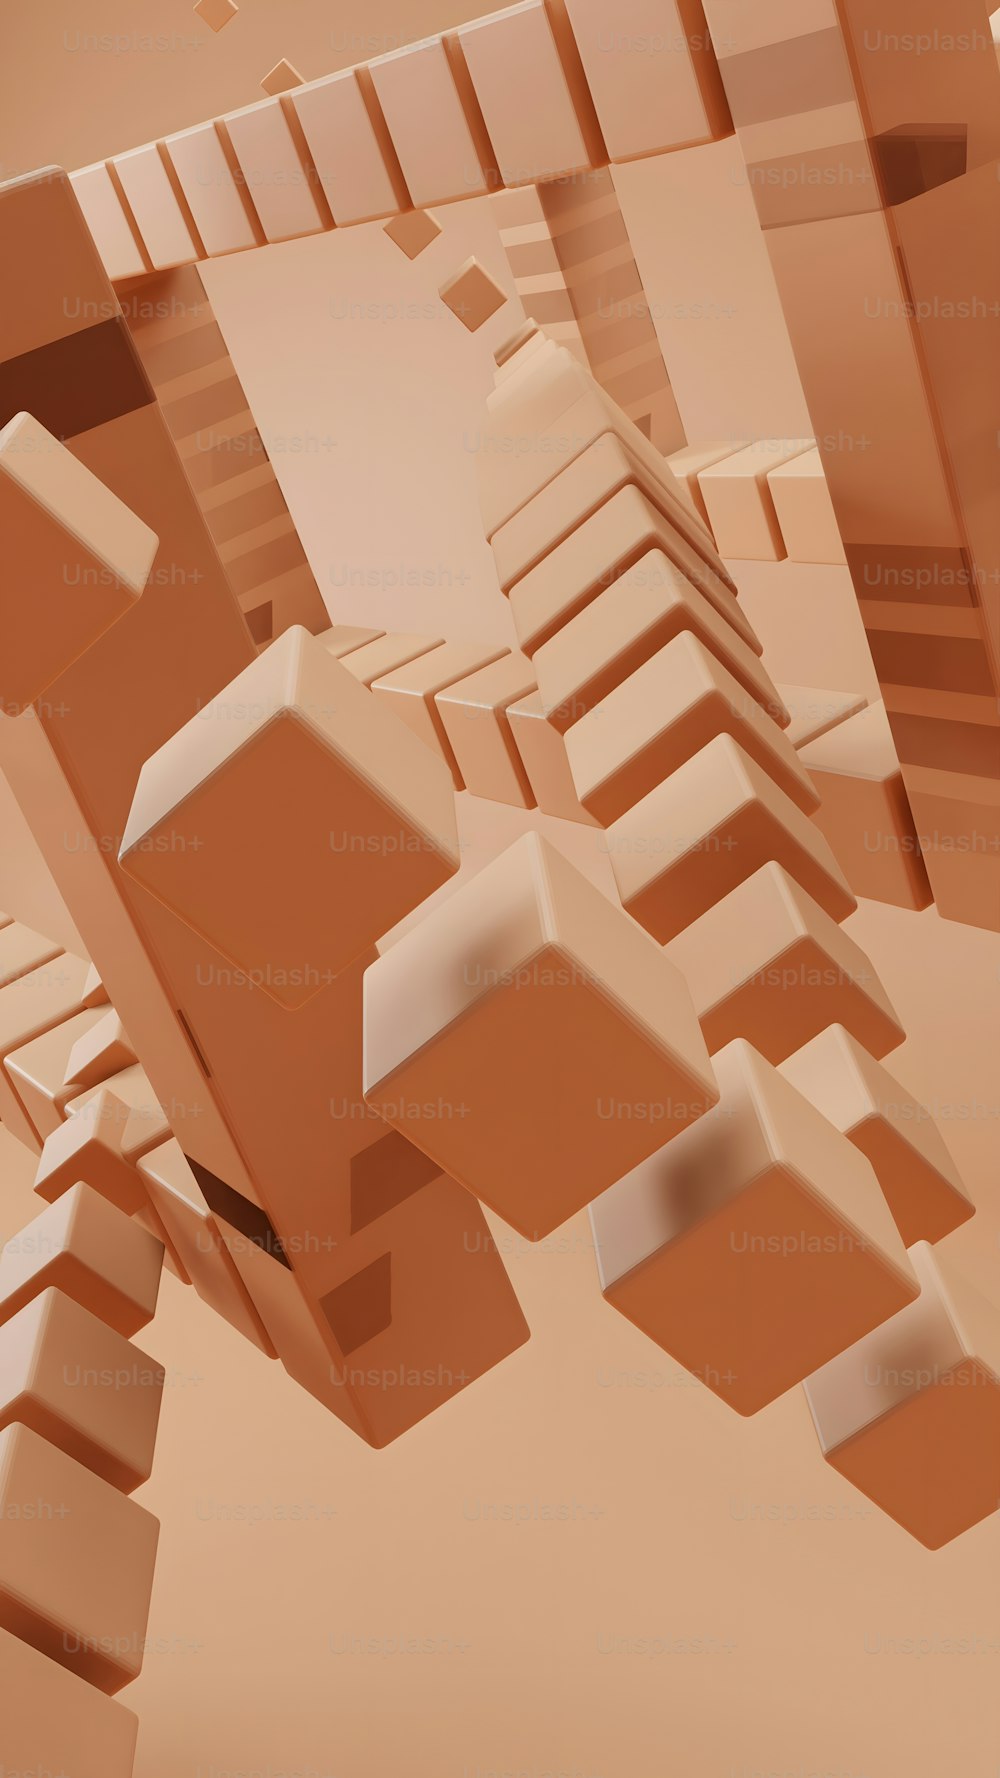 Una imagen generada por computadora de una ciudad abstracta